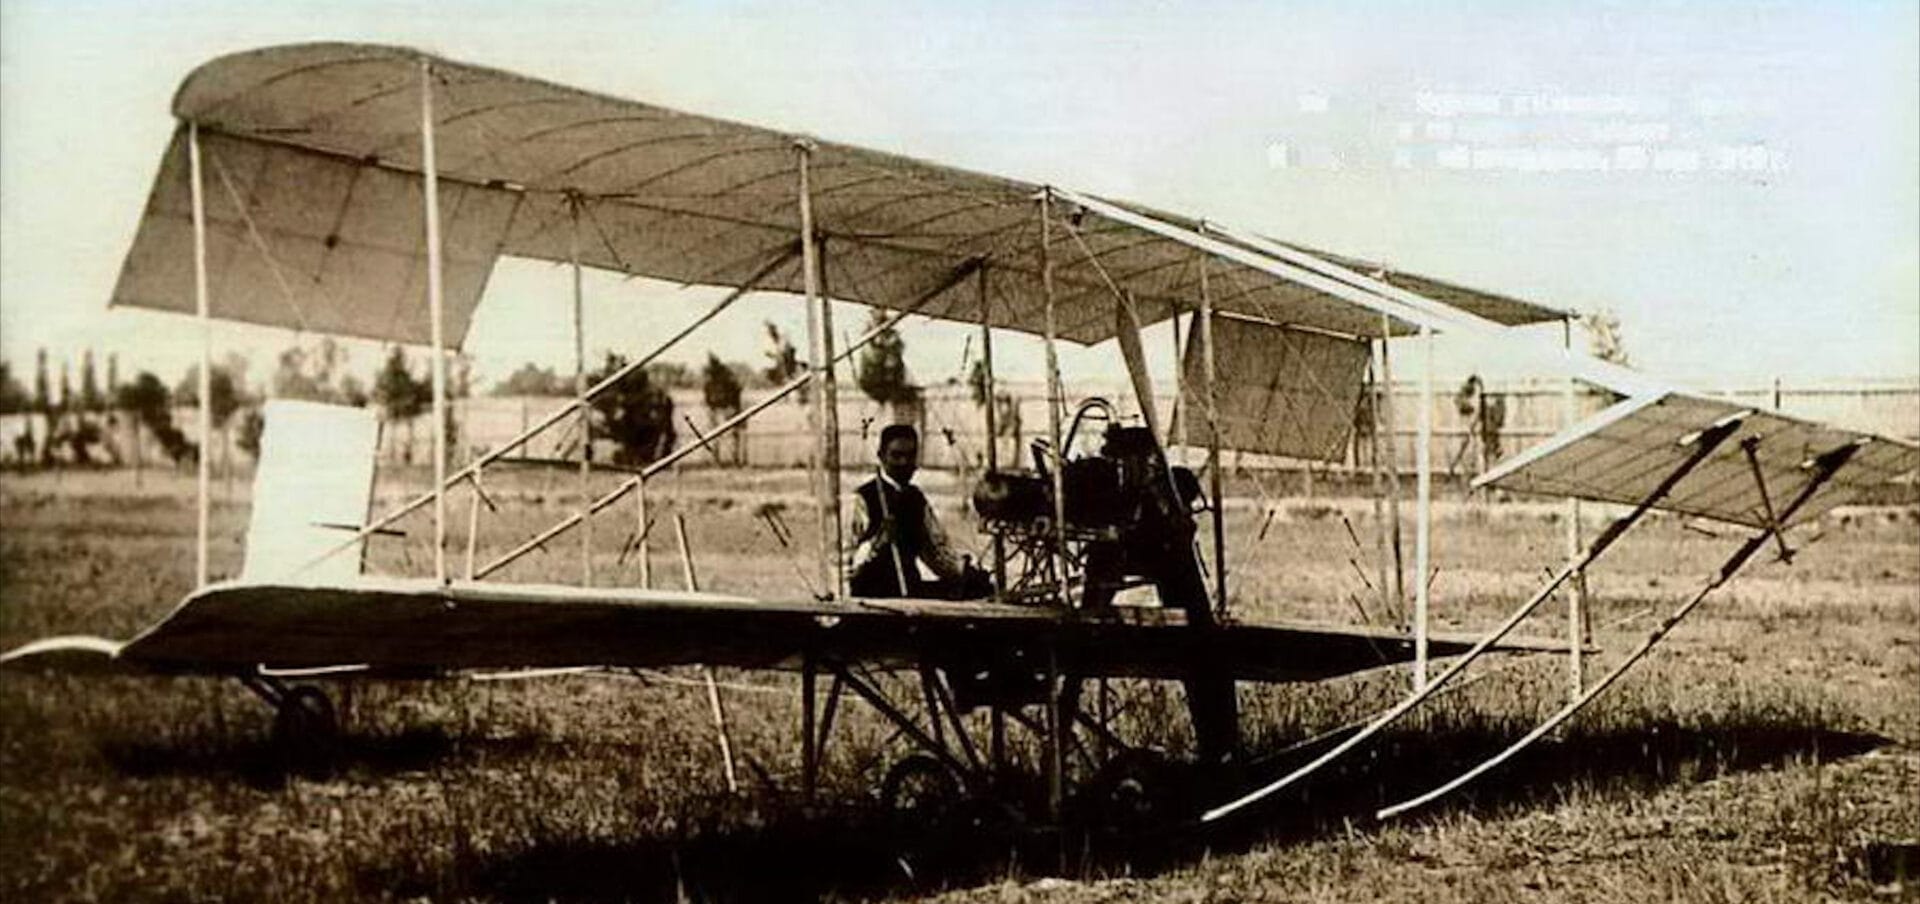 Kudashev-1 Plane in Kyiv, at the Syretsky Hippodrome, May 23, 1910